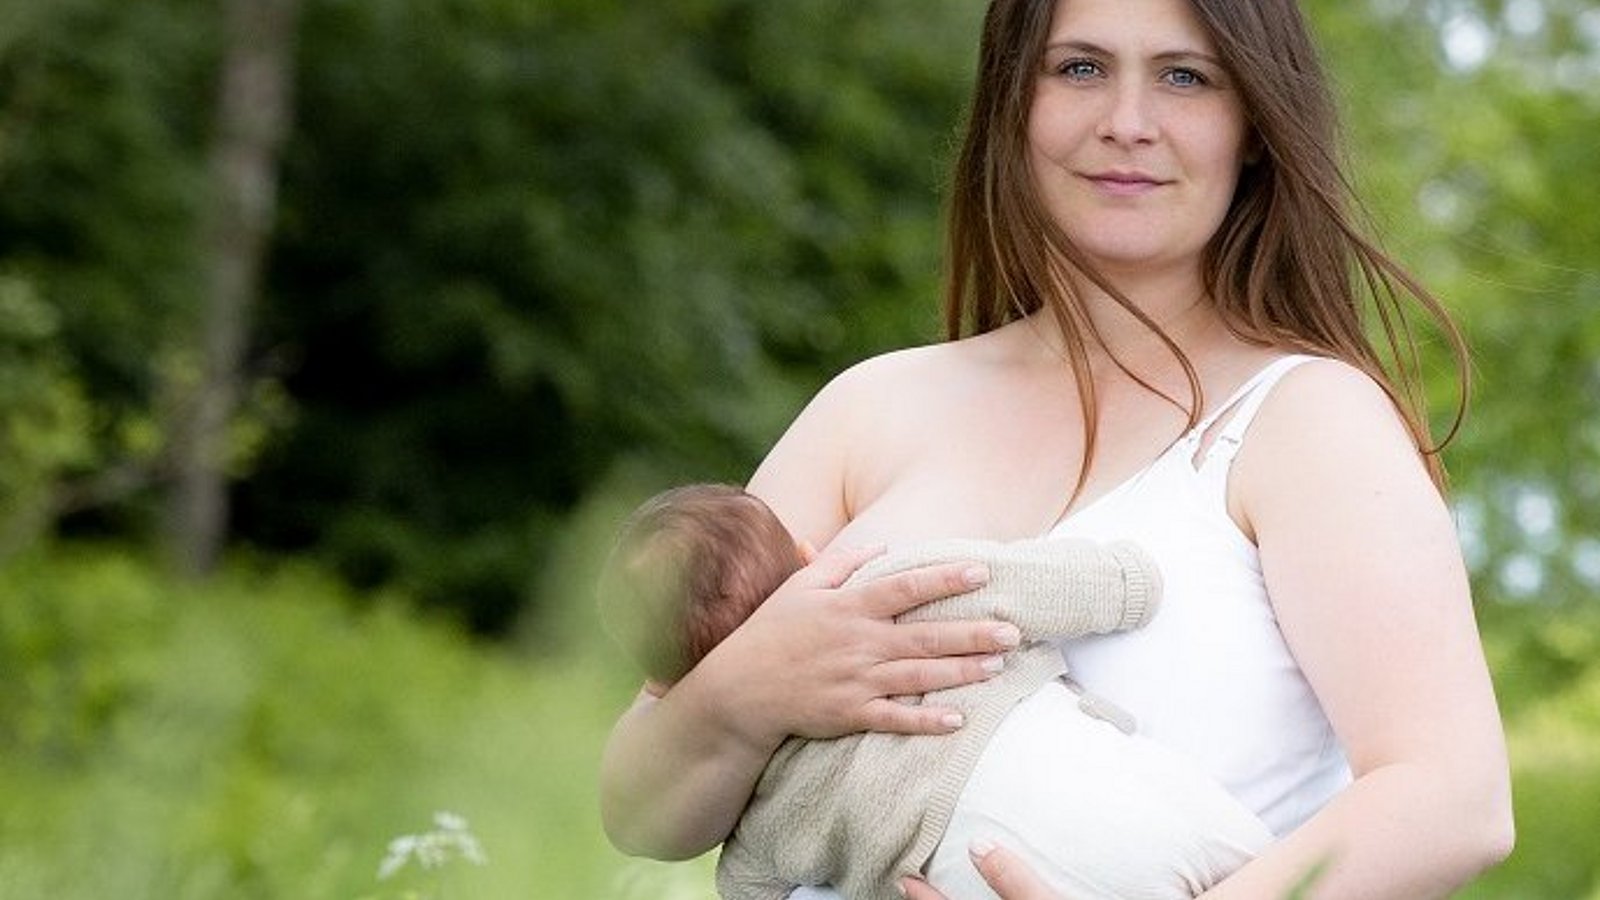 Pressefoto zur Weltstillwoche 2022, stillende Mutter mit Baby.